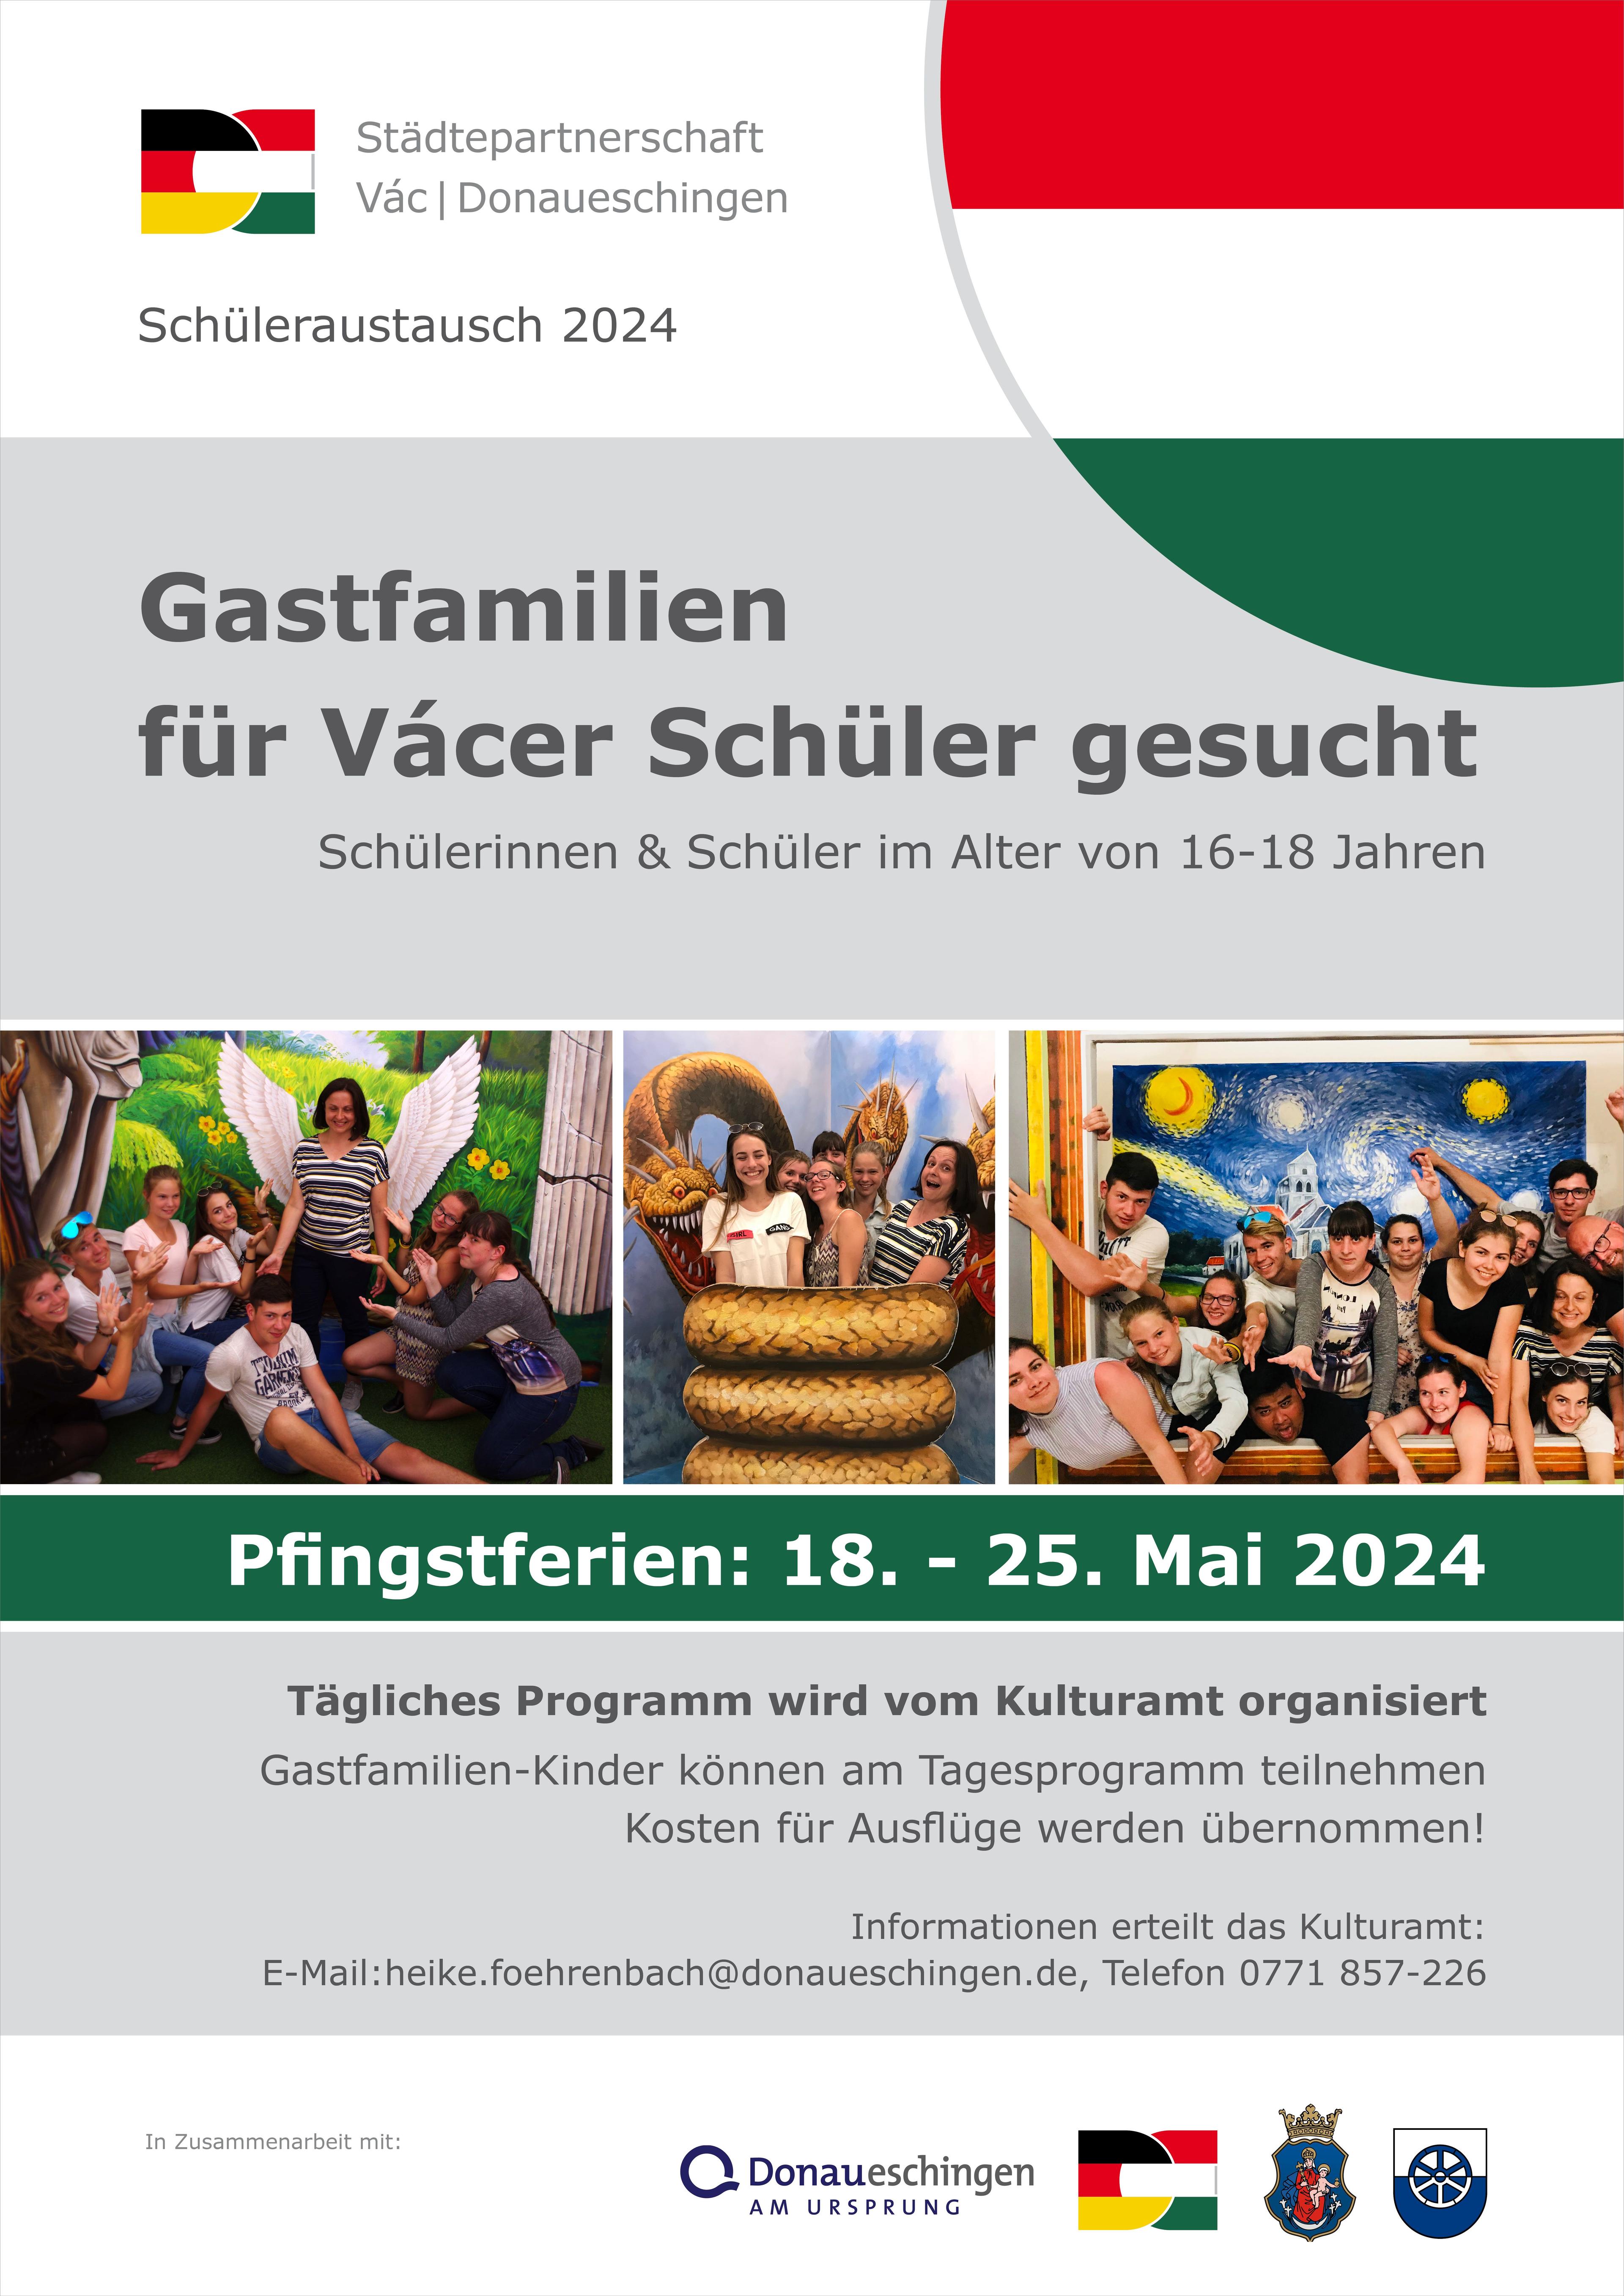 Einladung zur Gastfreundschaft: Schüleraustausch in Donaueschingen | Symbolbild